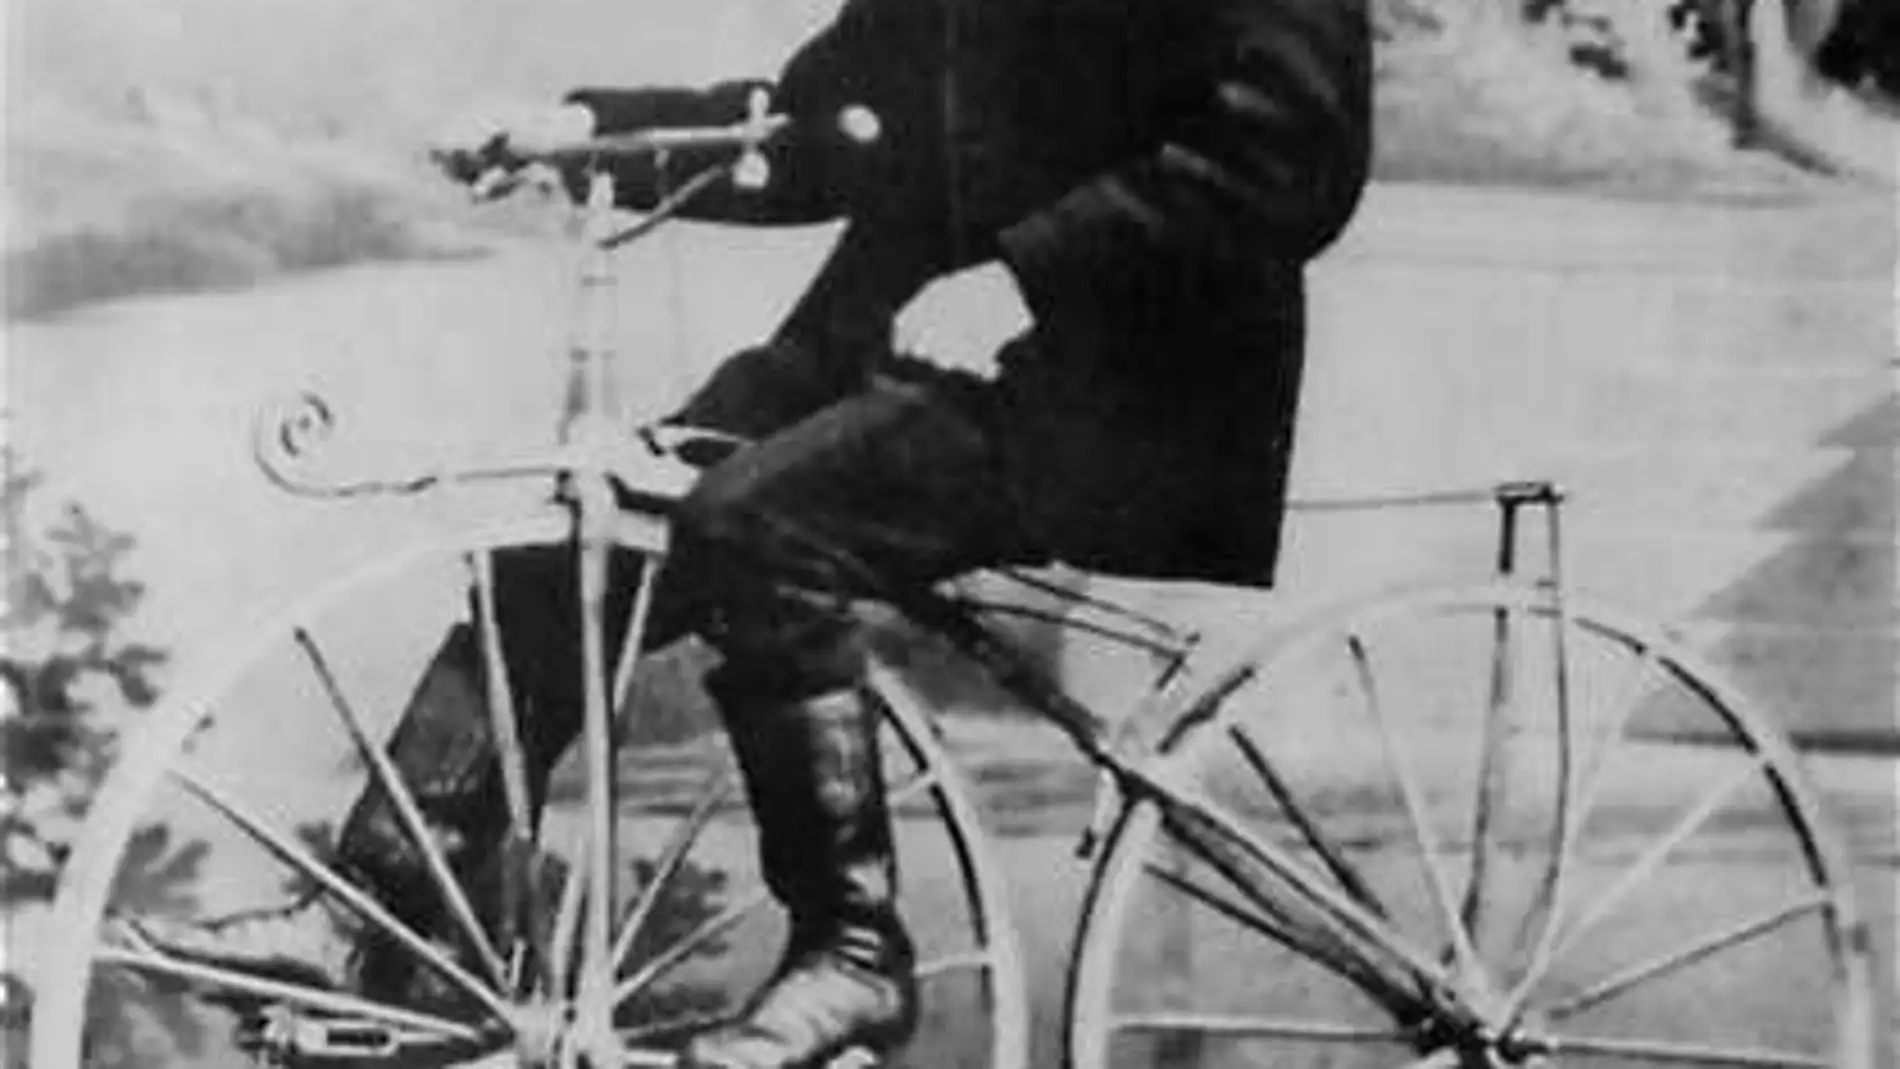 Condición previa Recuento en términos de Cuál fue la pieza clave para inventar la bicicleta?